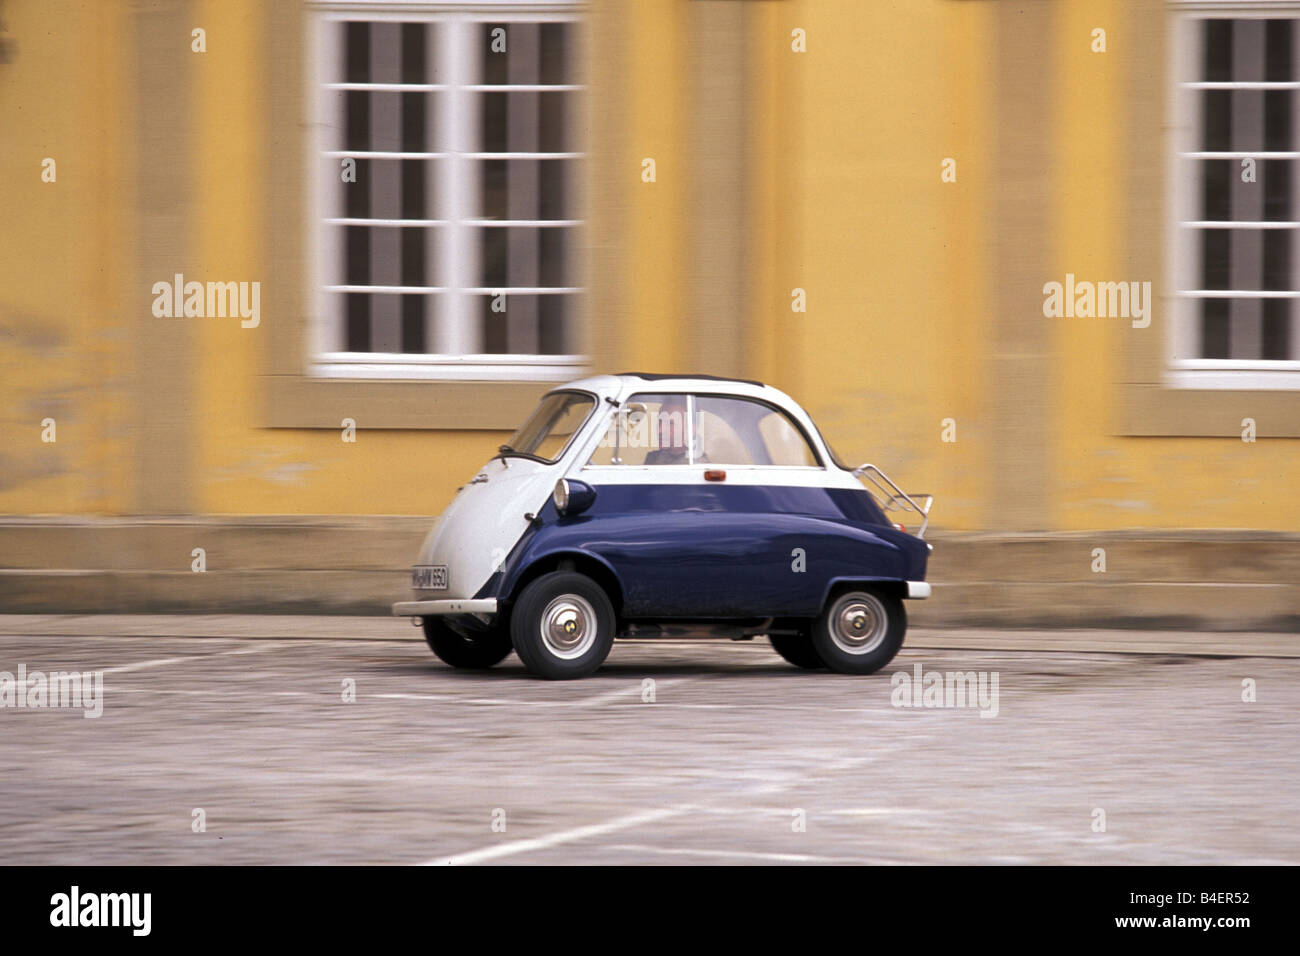 Auto, BMW Isetta, Oldtimer, unterhalb der 1950er Jahre, fünfziger Jahre, weiss-blau, fahren, Seite, Ansicht, Landschaft, Landschaft, Fotograf: Hans Diete Stockfoto